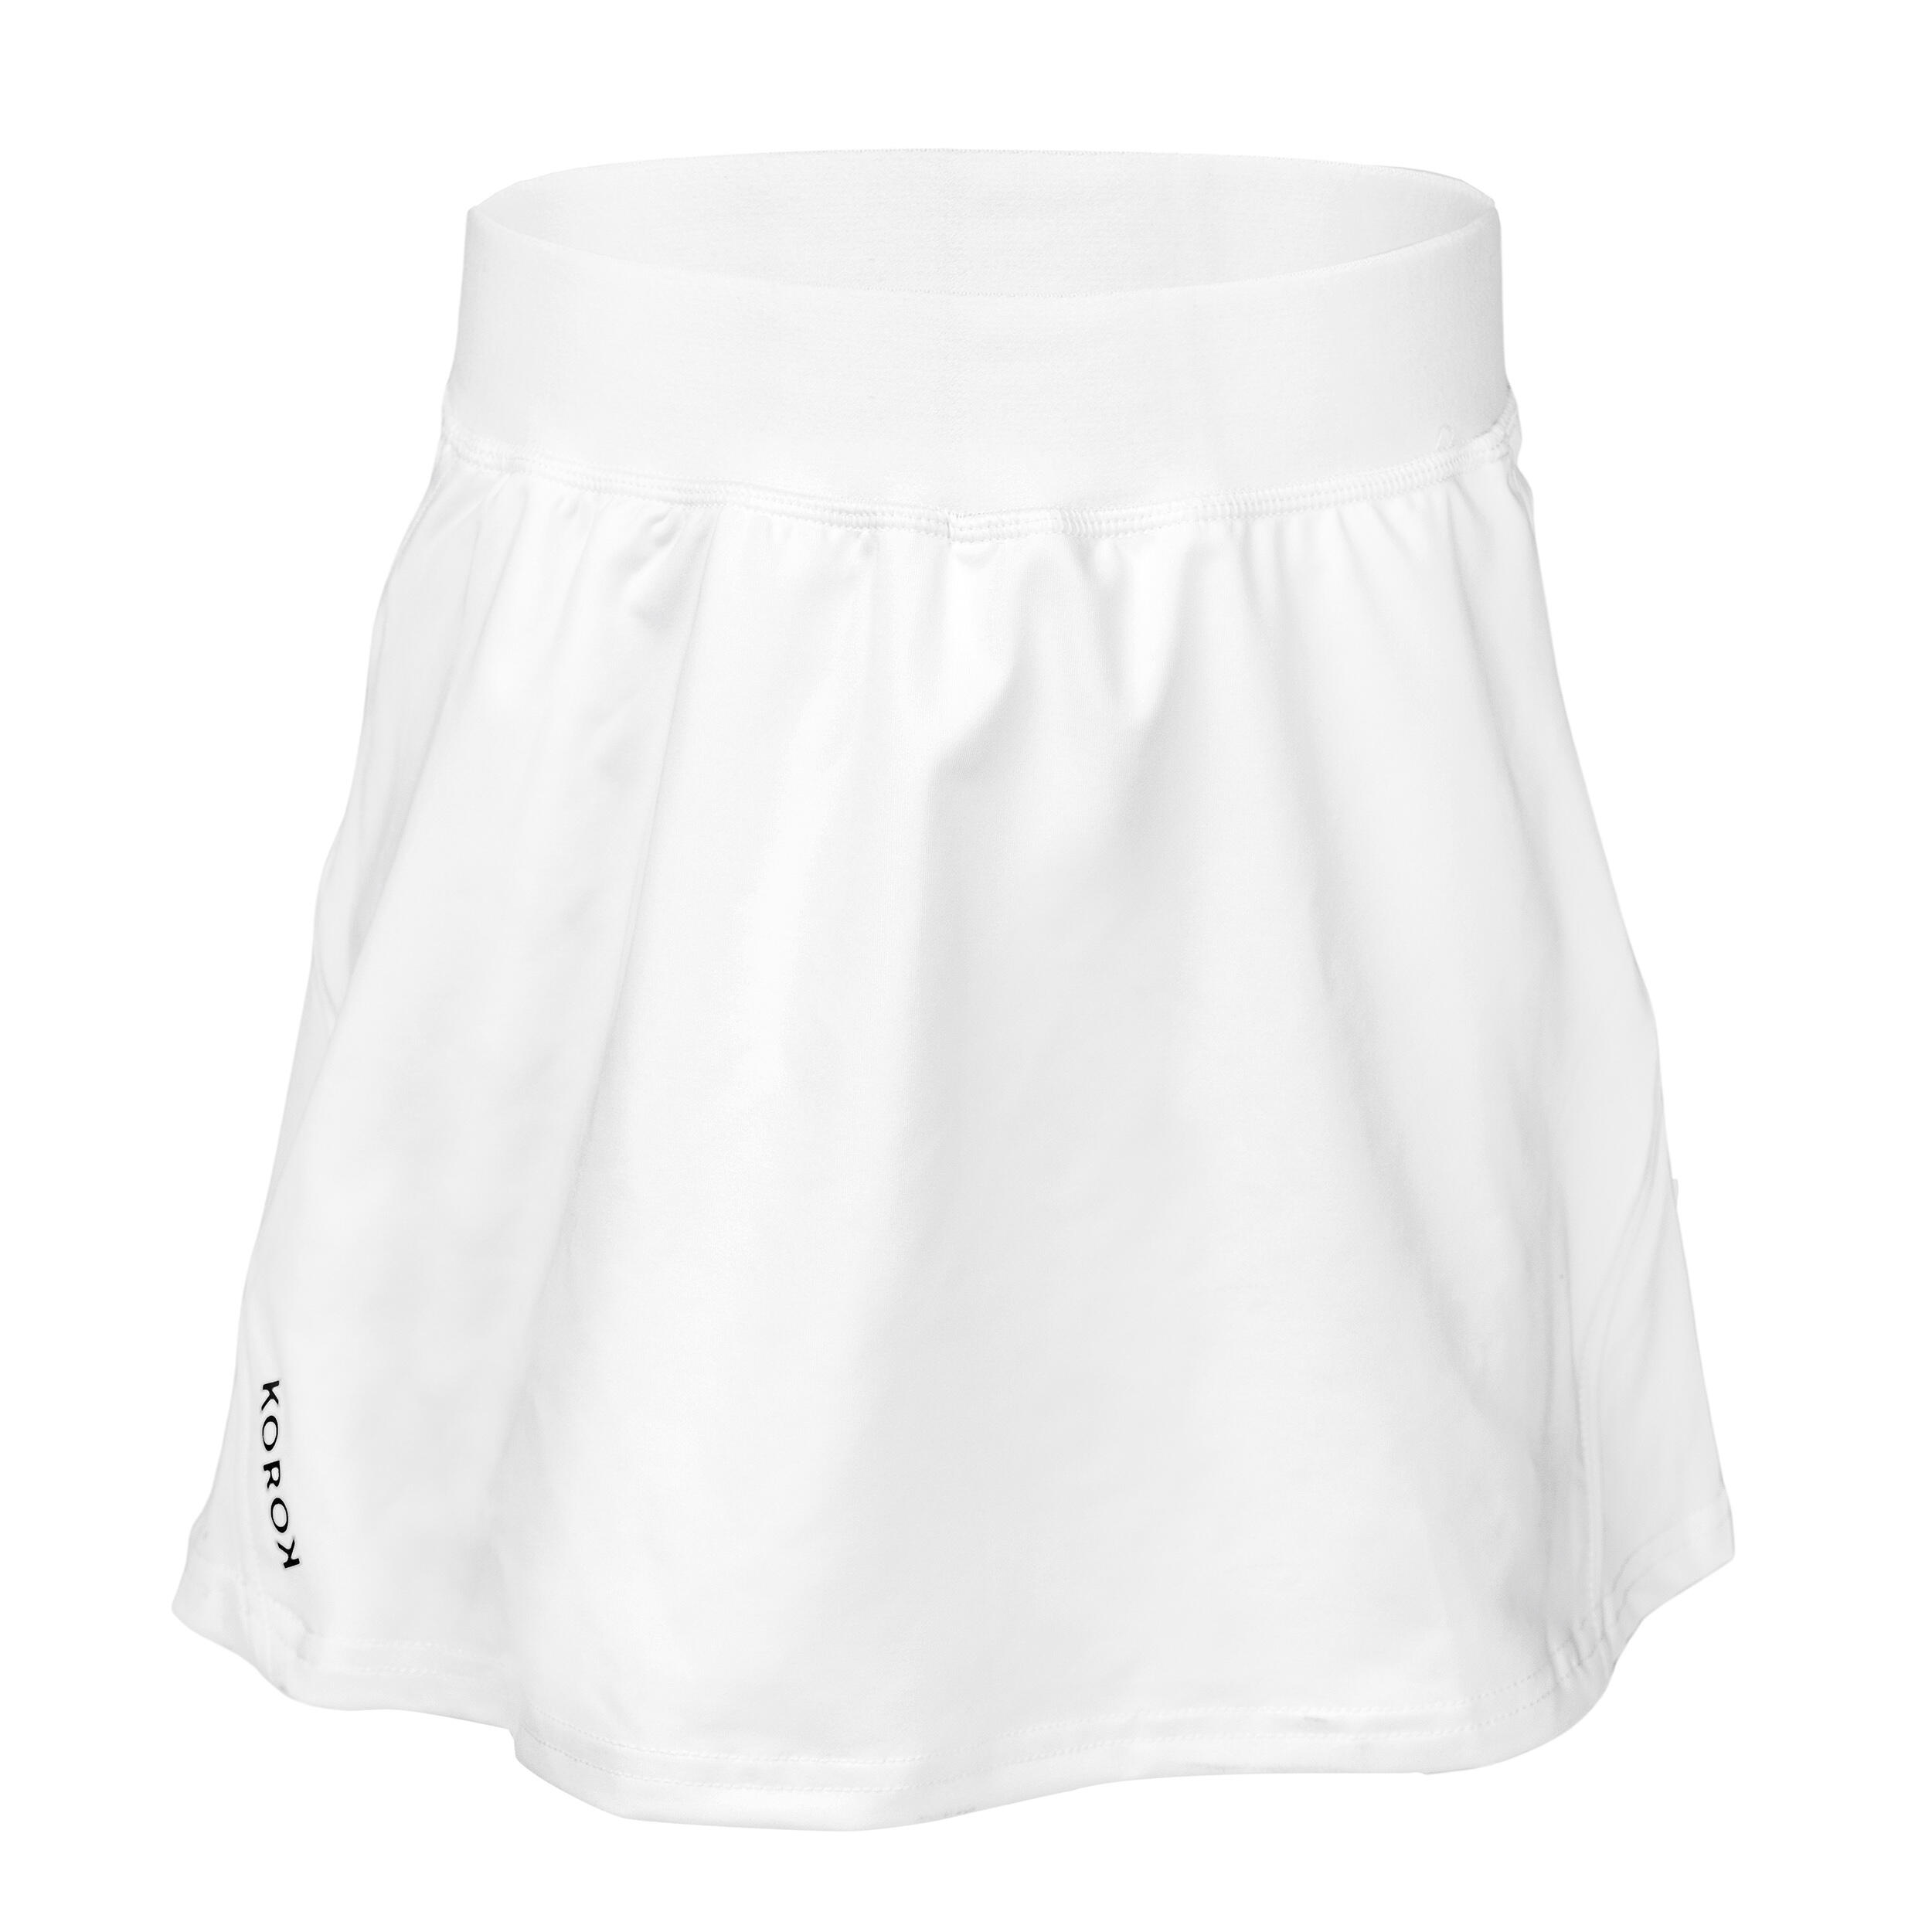 Girls' High-Intensity Field Hockey Skirt FH900 - White 1/4